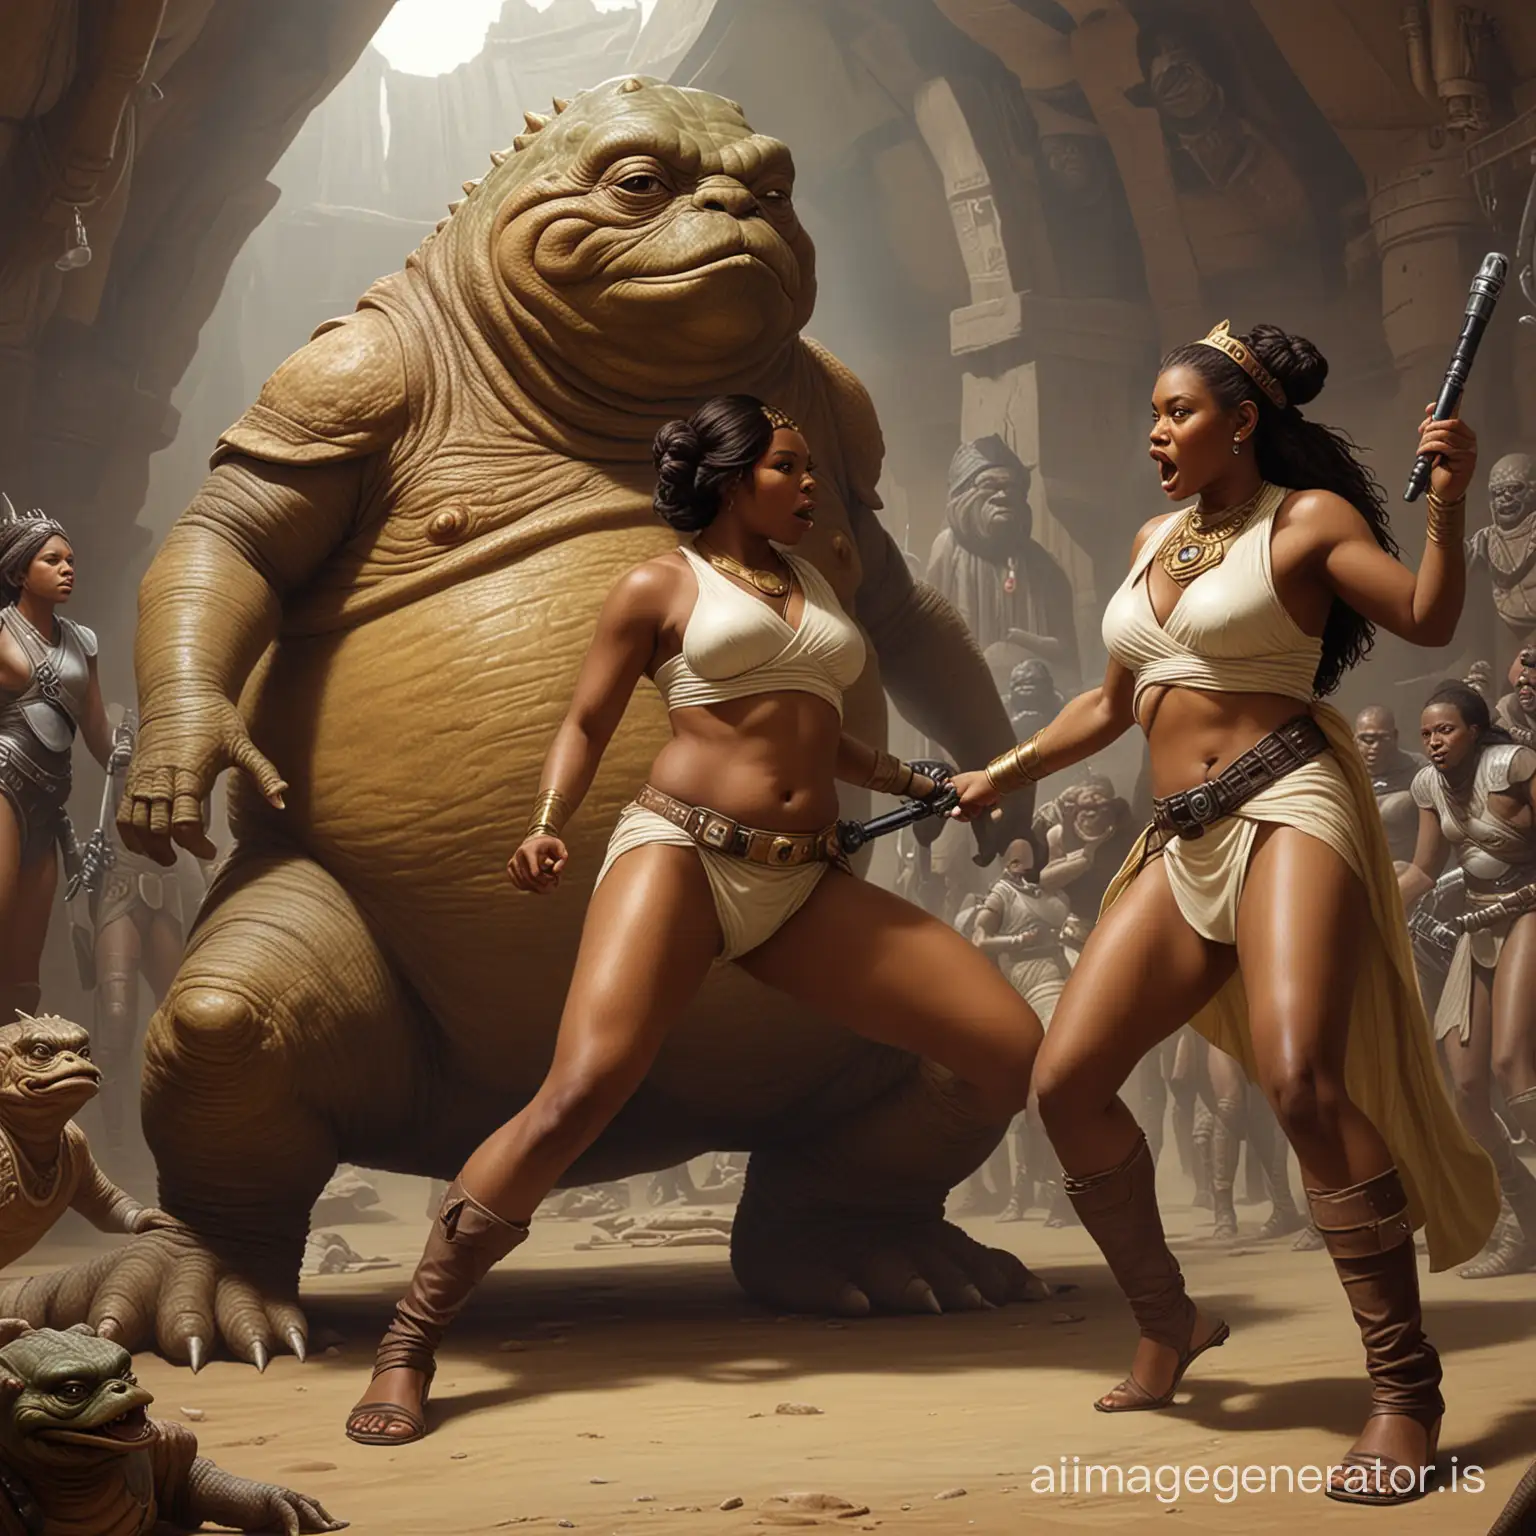 Ebony-Princess-Confronts-Jabba-the-Hutt-in-Intergalactic-Showdown